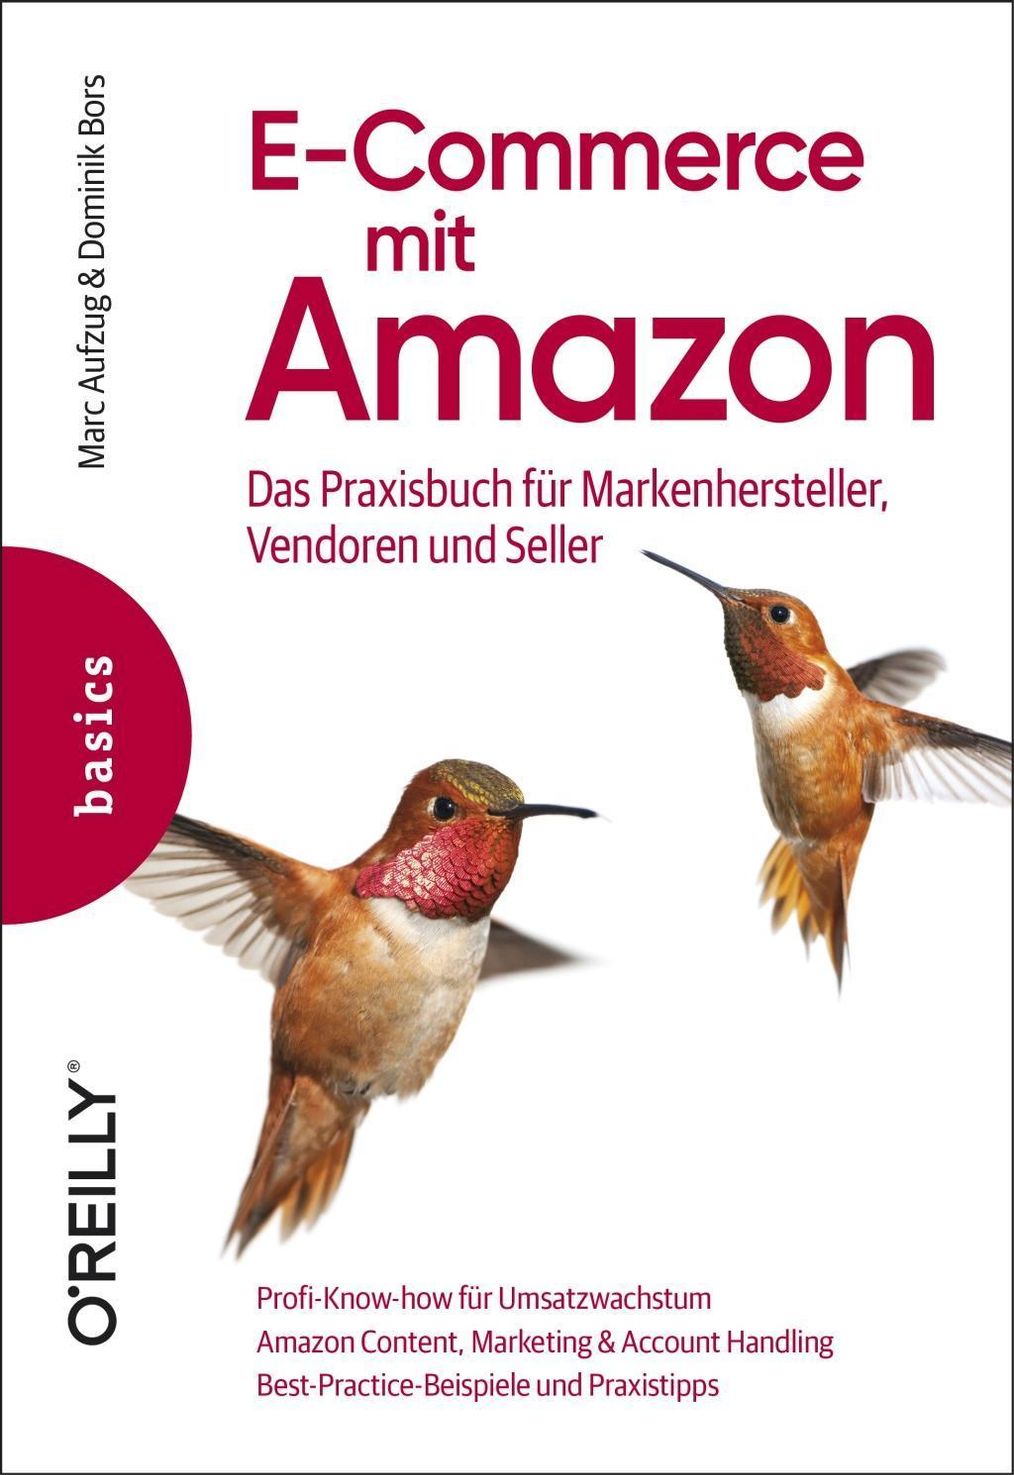 E-Commerce mit Amazon Buch von Marc Aufzug versandkostenfrei - Weltbild.ch